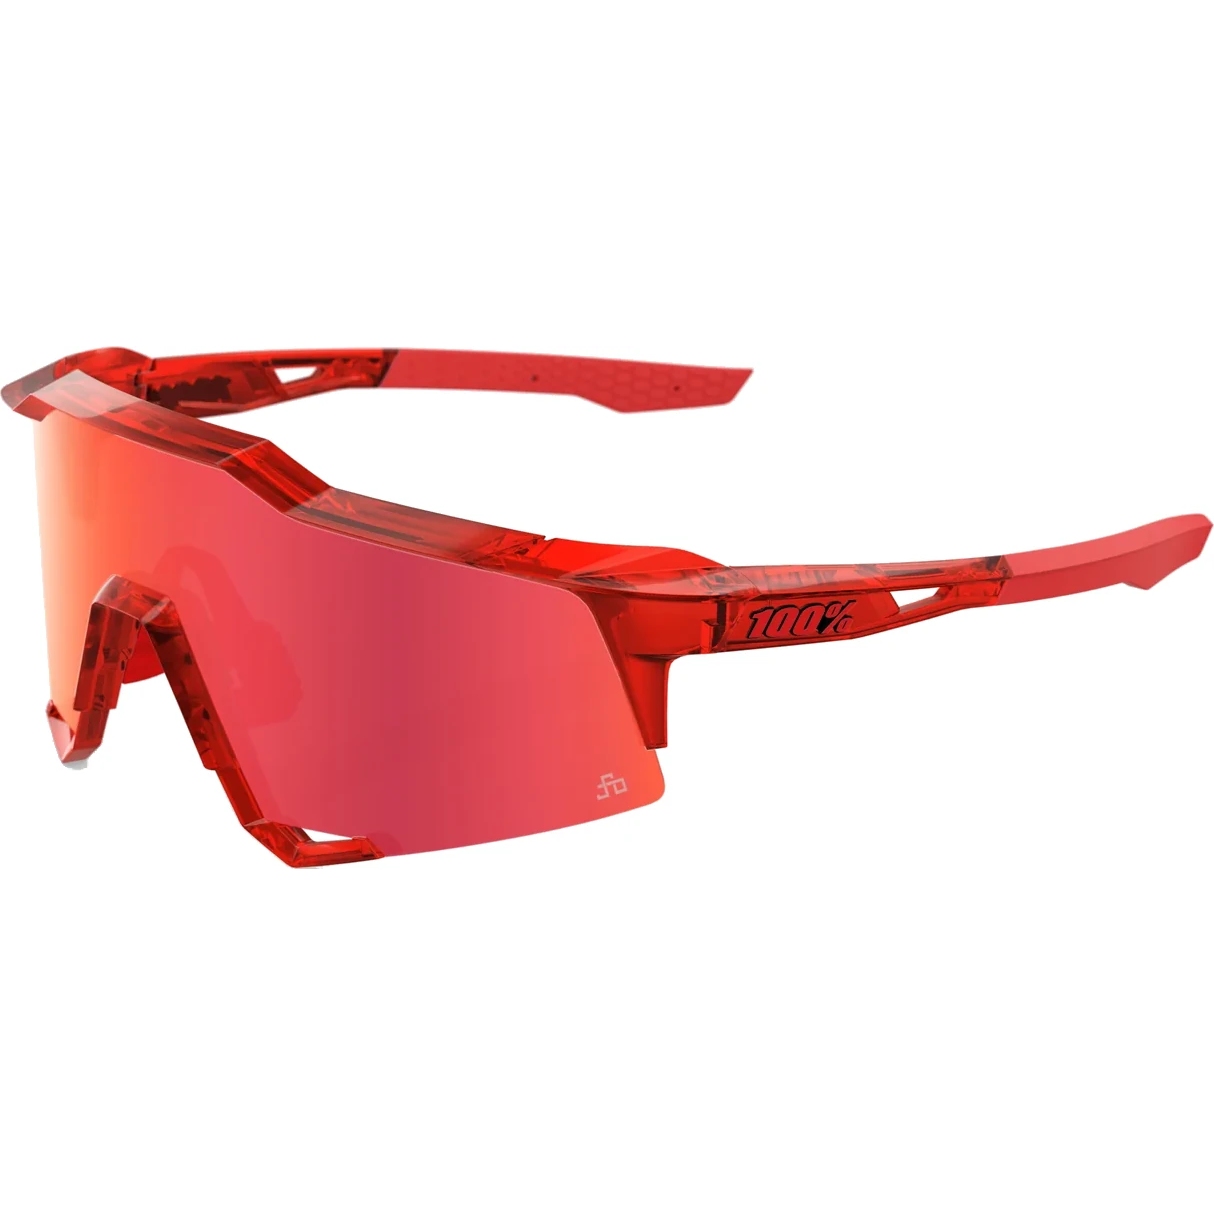 Produktbild von 100% Speedcraft LE Brille - HiPER Red Mirror Lens - Peter Sagan Limited Edition - Translucent Red